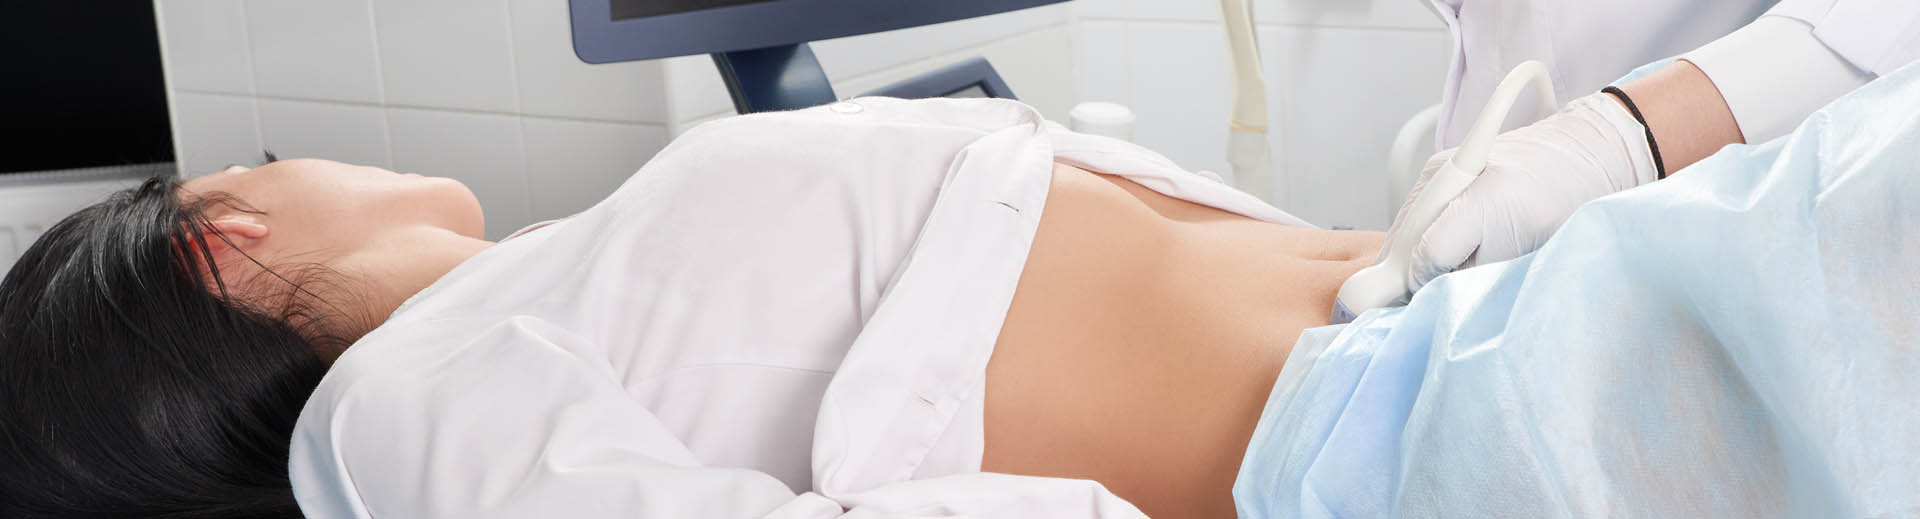 Examen échographique de l'abdomen chez une femme